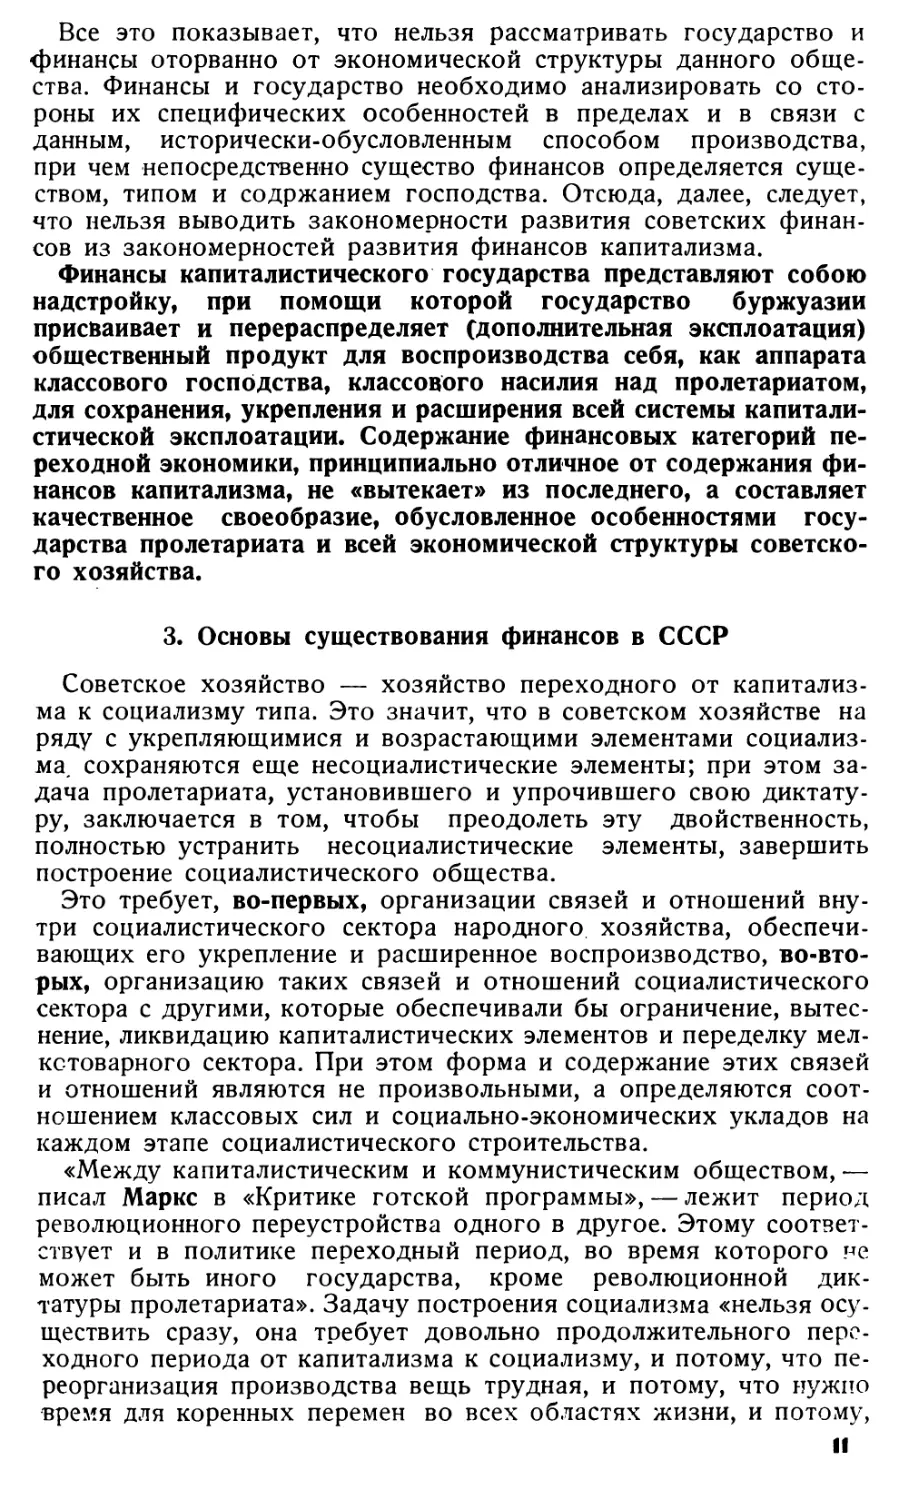 3. Основы существования финансов в СССР